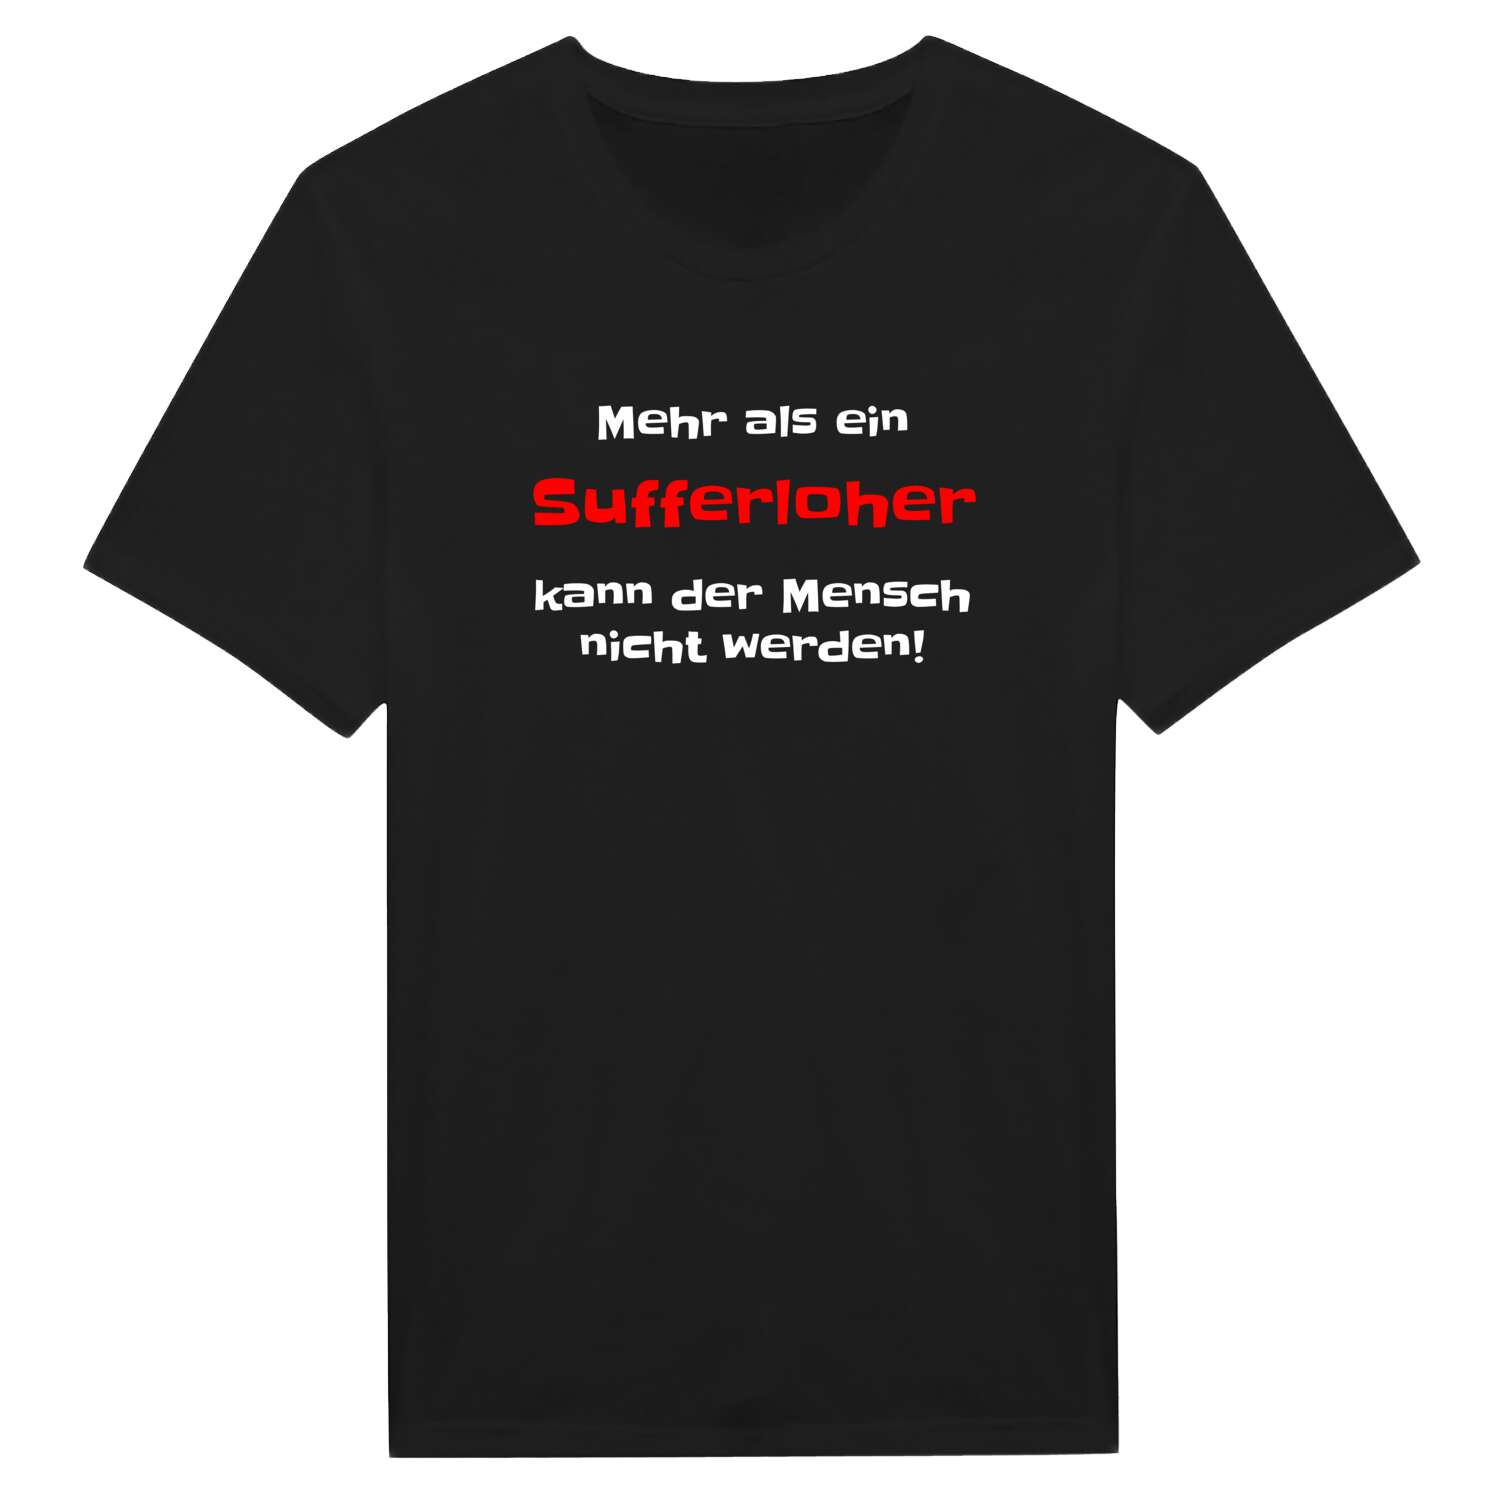 Sufferloh T-Shirt »Mehr als ein«